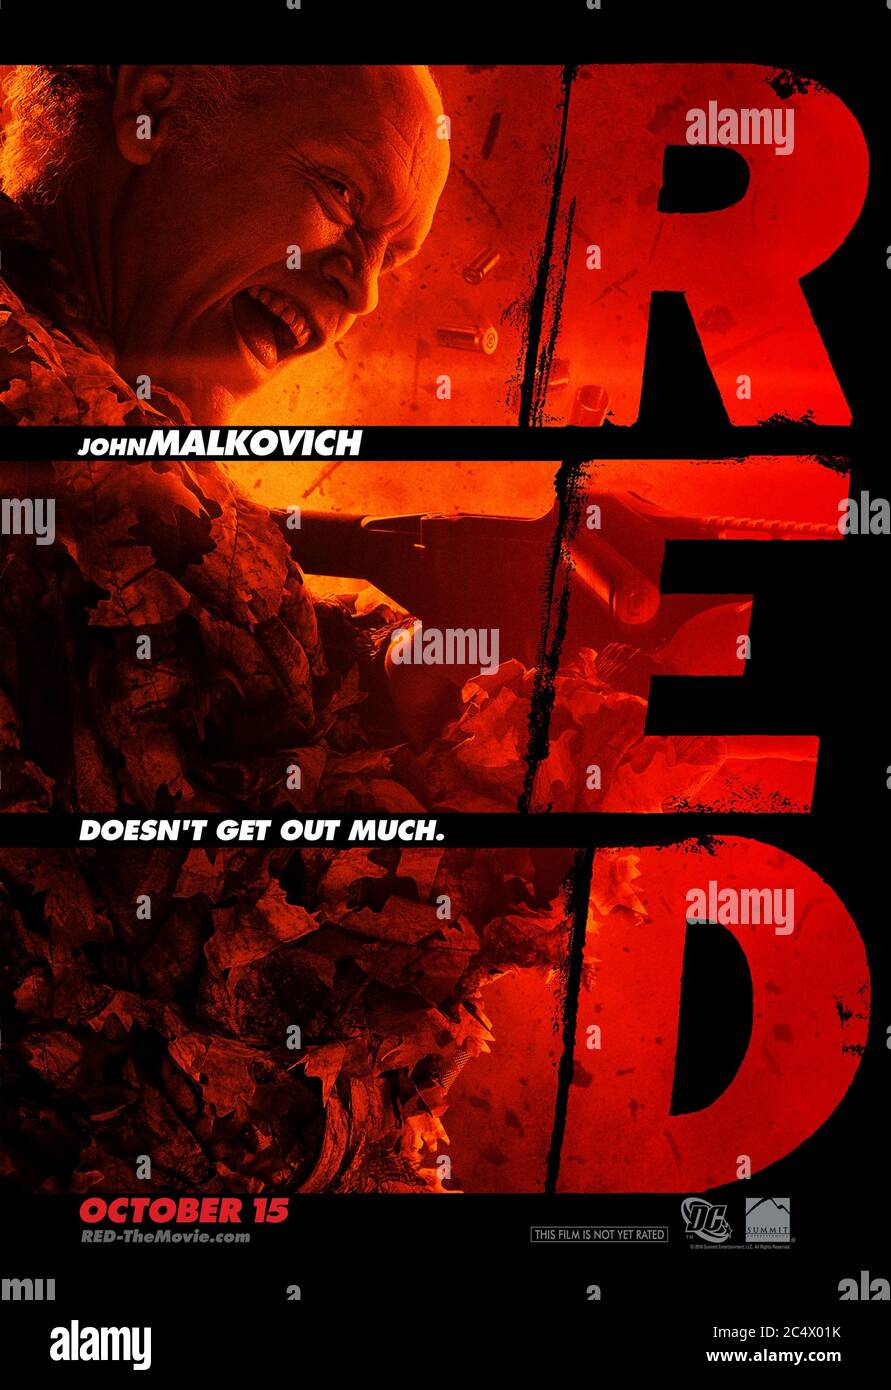 RED (2010) unter der Regie von Robert Schwentke mit John Malkovich als Marvin Boggs, der 'R.E.D.' ist - Ruhestand extrem gefährlich, basierend auf dem DC Comic Buch. Stockfoto